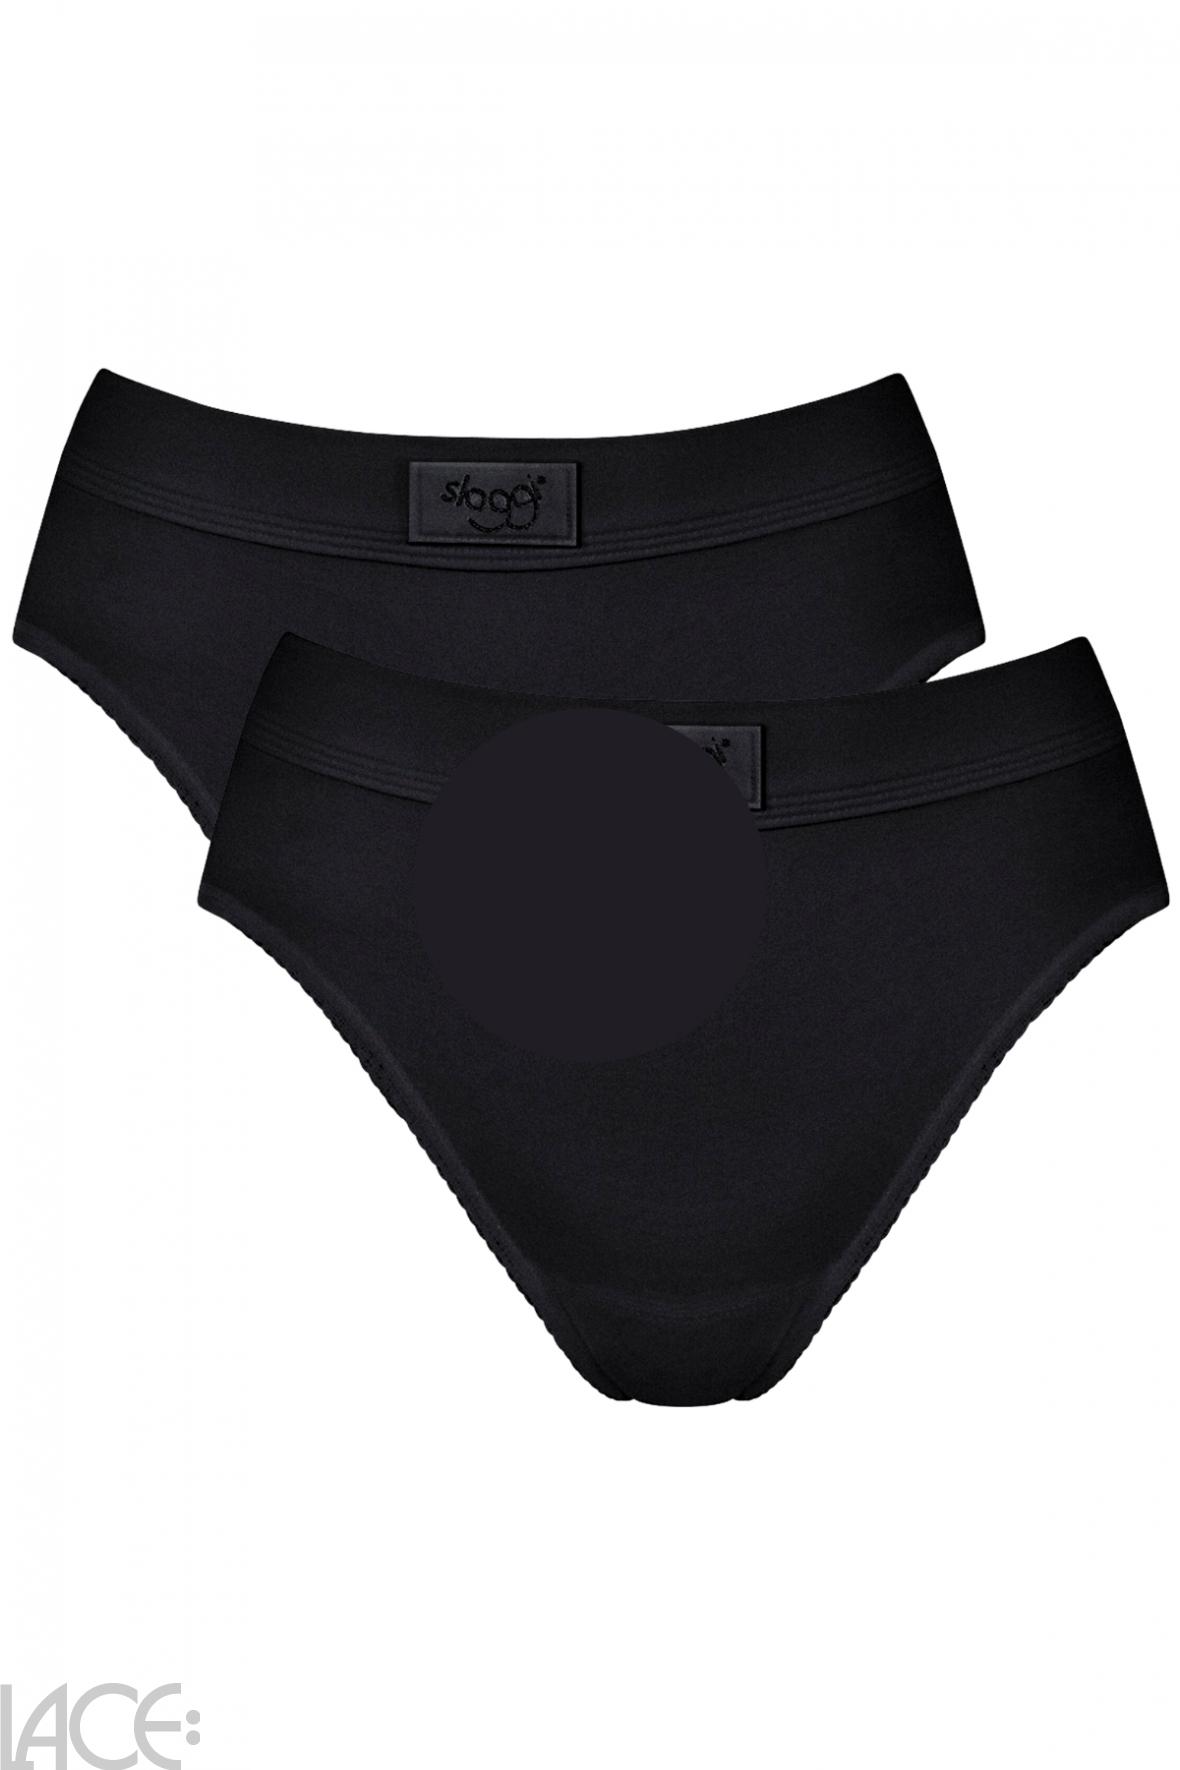 Sloggi Sloggi Double Comfort Brief - Cotton - 2 Pack BLACK – Lace